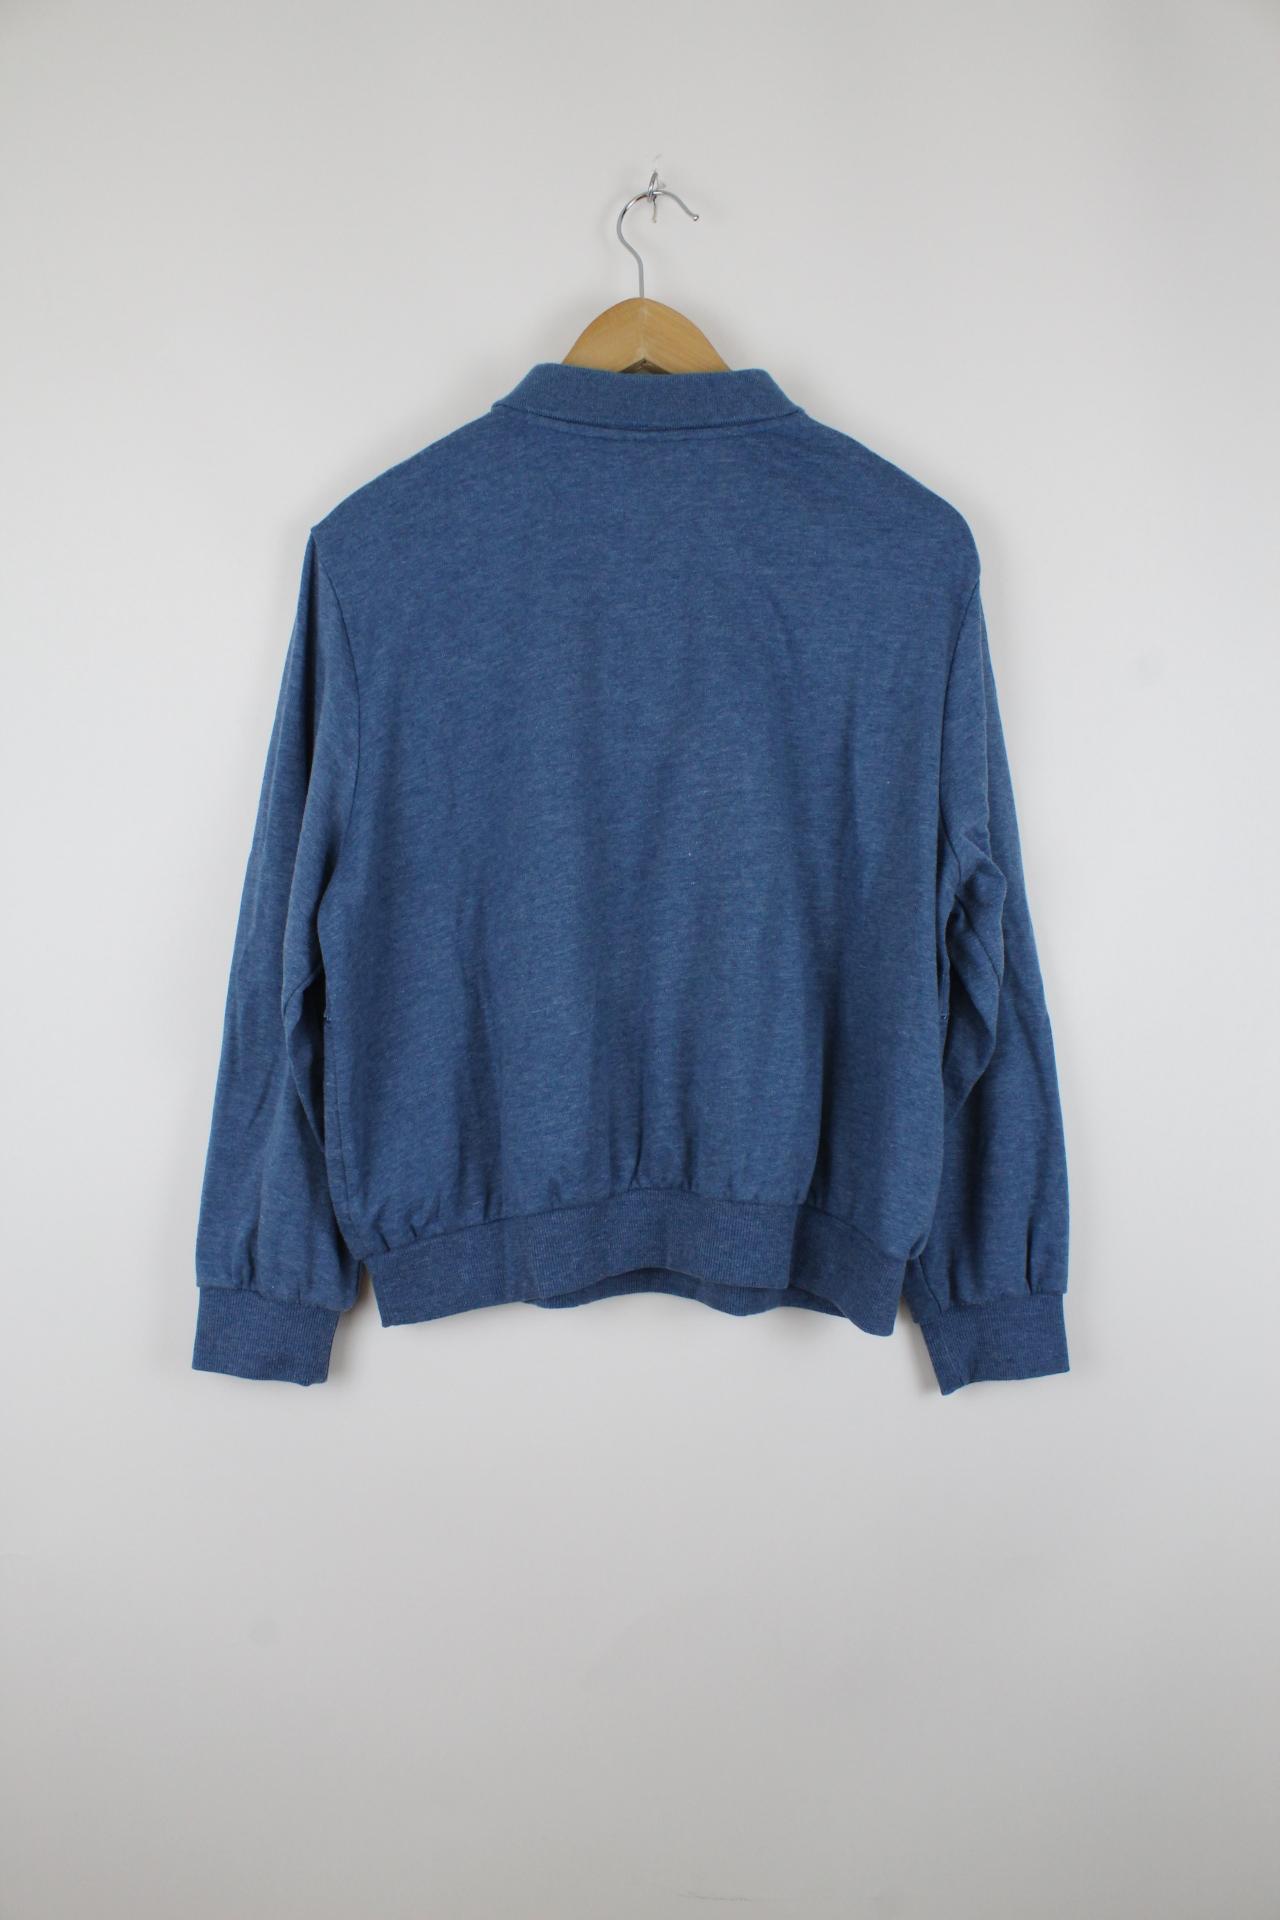 Vintage USA Sweater Blau - M